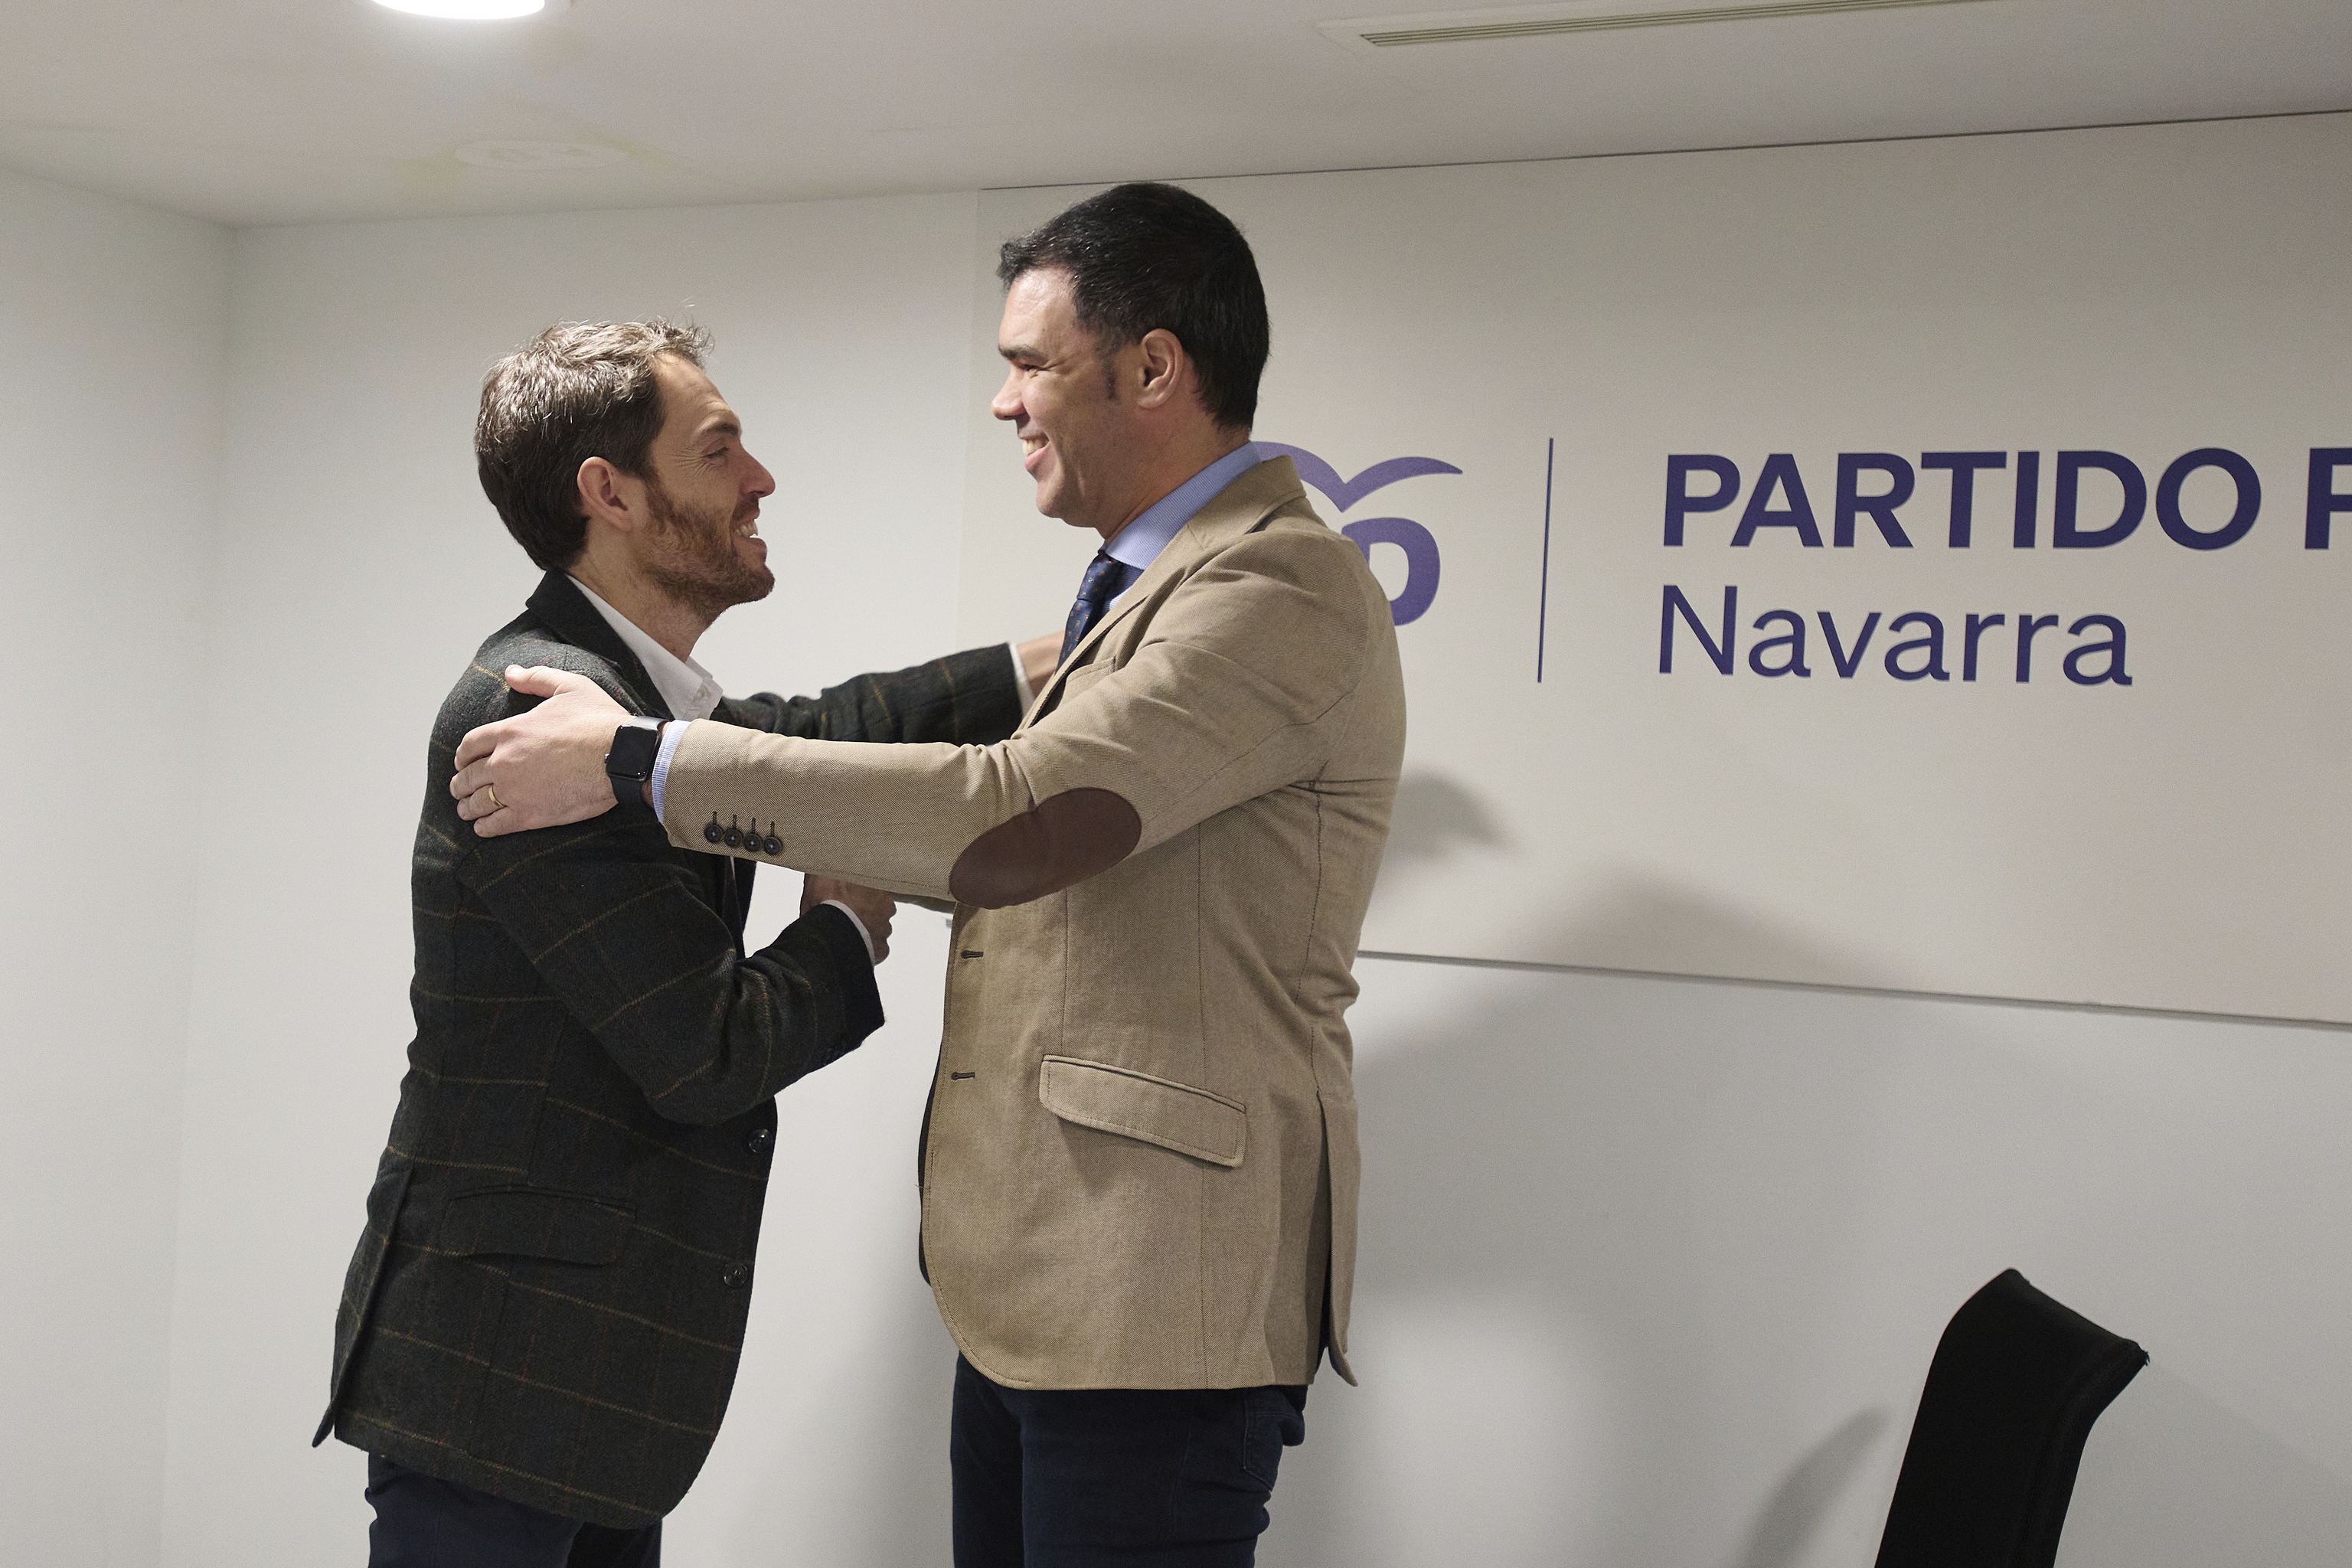 El diputado Sergio Sayas saluda a Javier Garca durante el encuentro que, junto Carlos Garca Adanero, mantuvieron en la sede del PP de Pamplona.